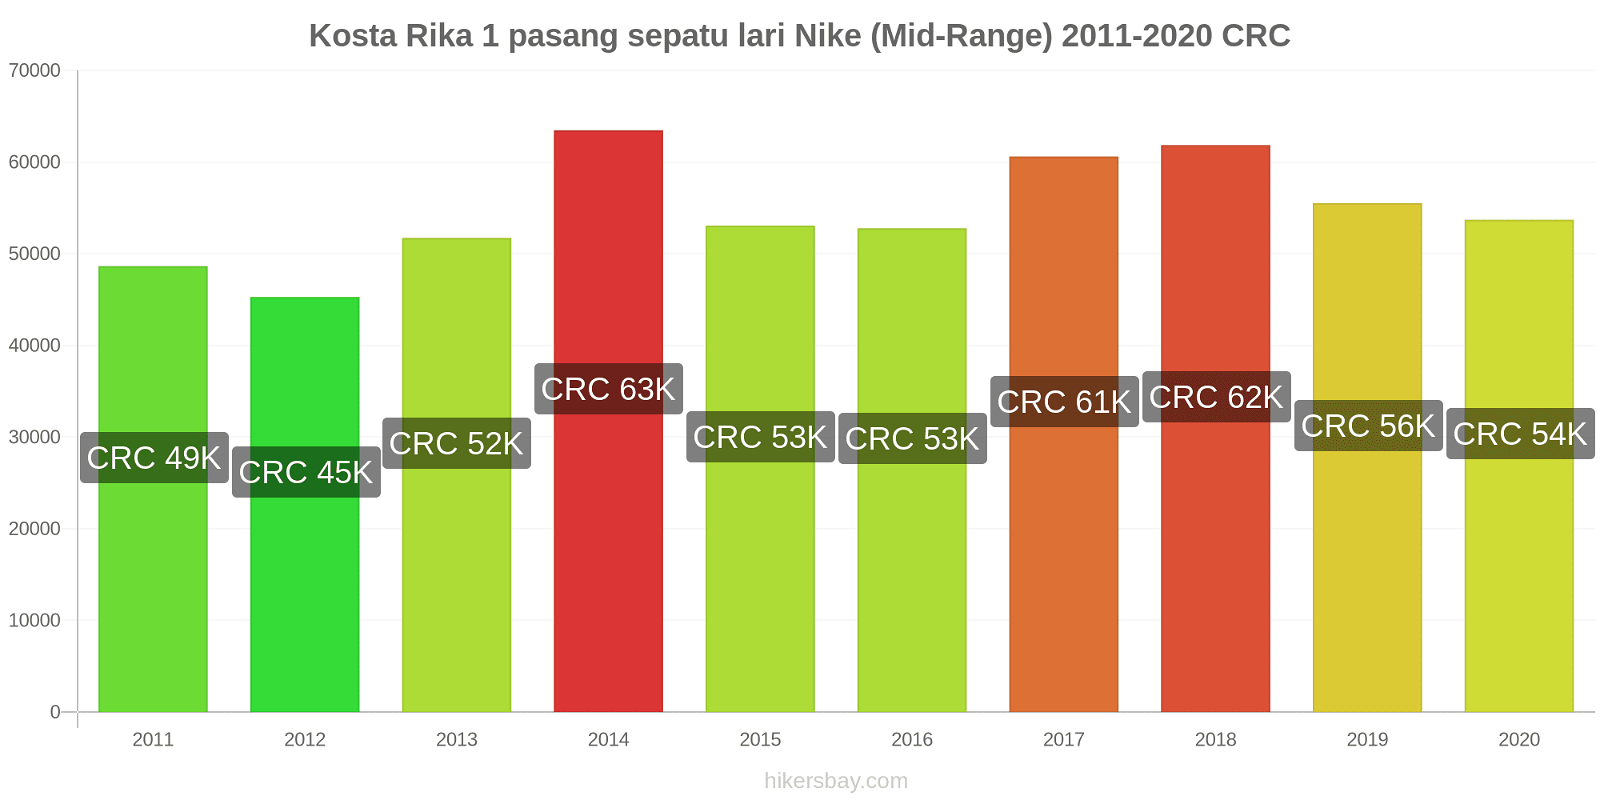 Kosta Rika perubahan harga 1 pasang sepatu lari Nike (Mid-Range) hikersbay.com